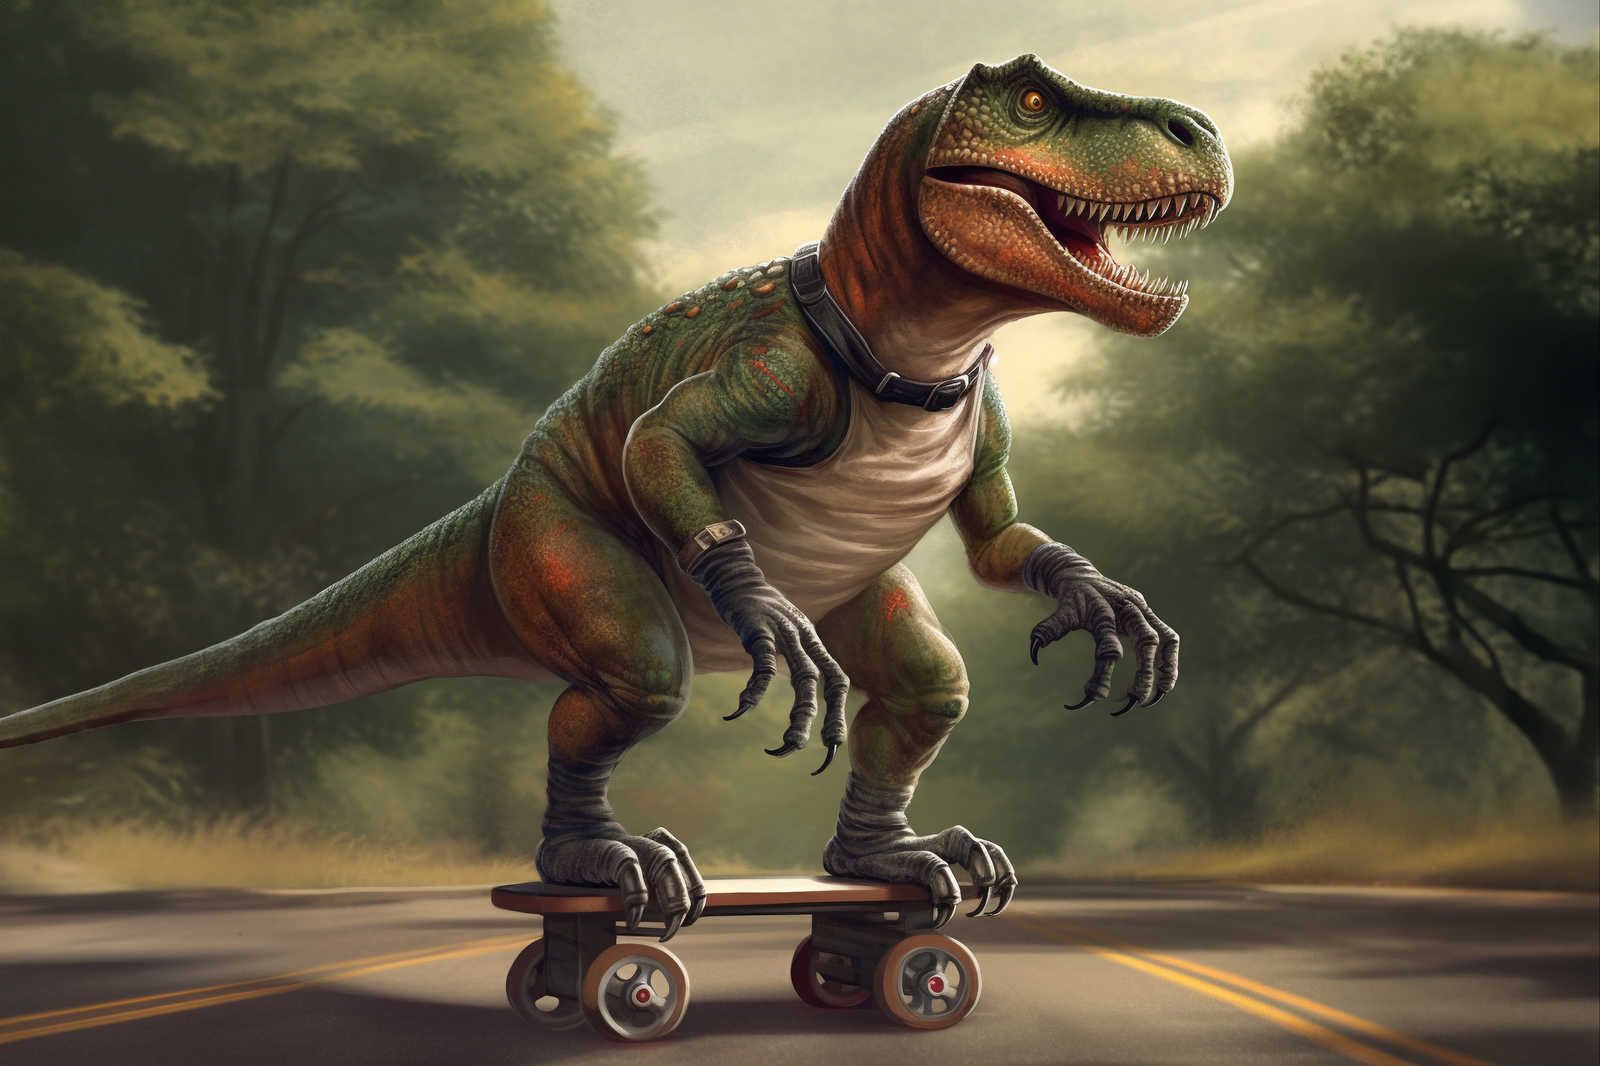             KI-Leinwandbild »skating t-rex« – 90 cm x 60 cm
        